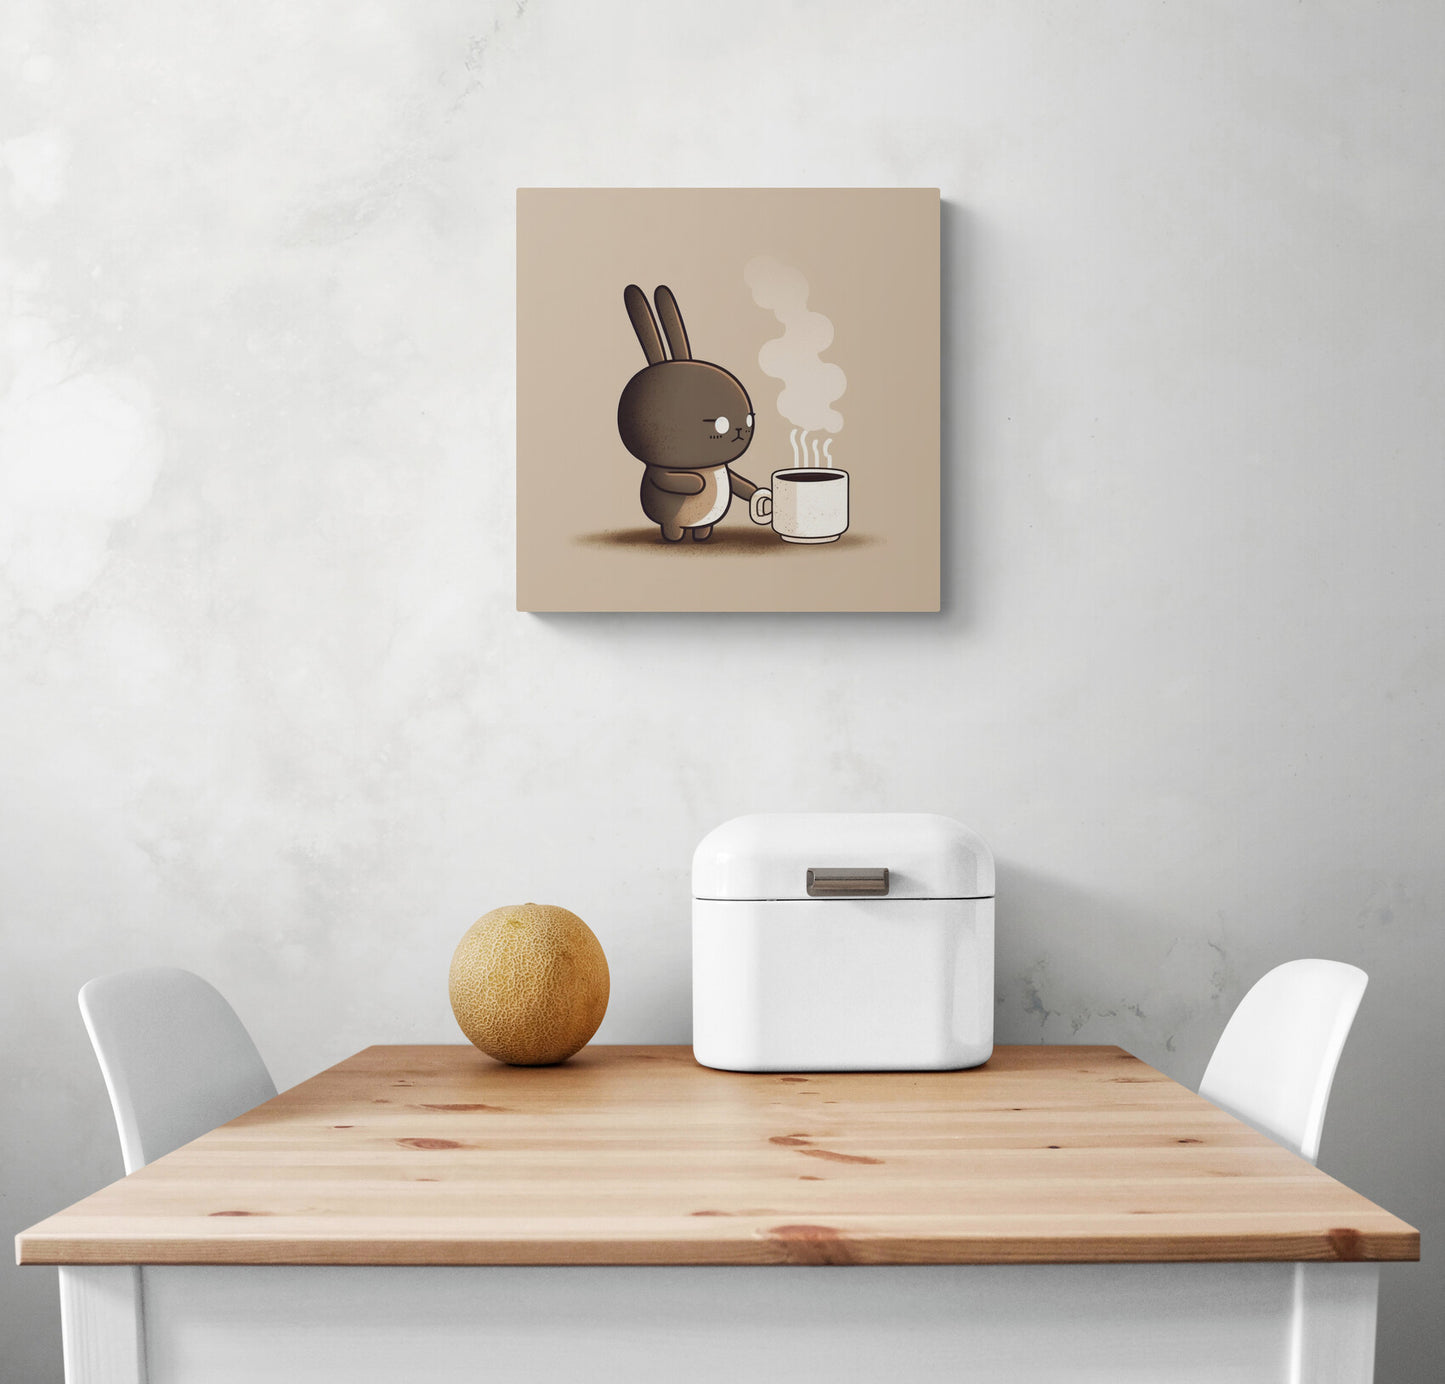 Petite toile murale qui habille le mur d'une cuisine au style japonaise et minimaliste. Un lapin marron malicieux, le regard figé par la douleur a été pris au dépourvu par la chaleur de la tasse de café qu'il tente de saisir. Aux couleurs, la scène humoristique apporte à cela mouvement et vitalité